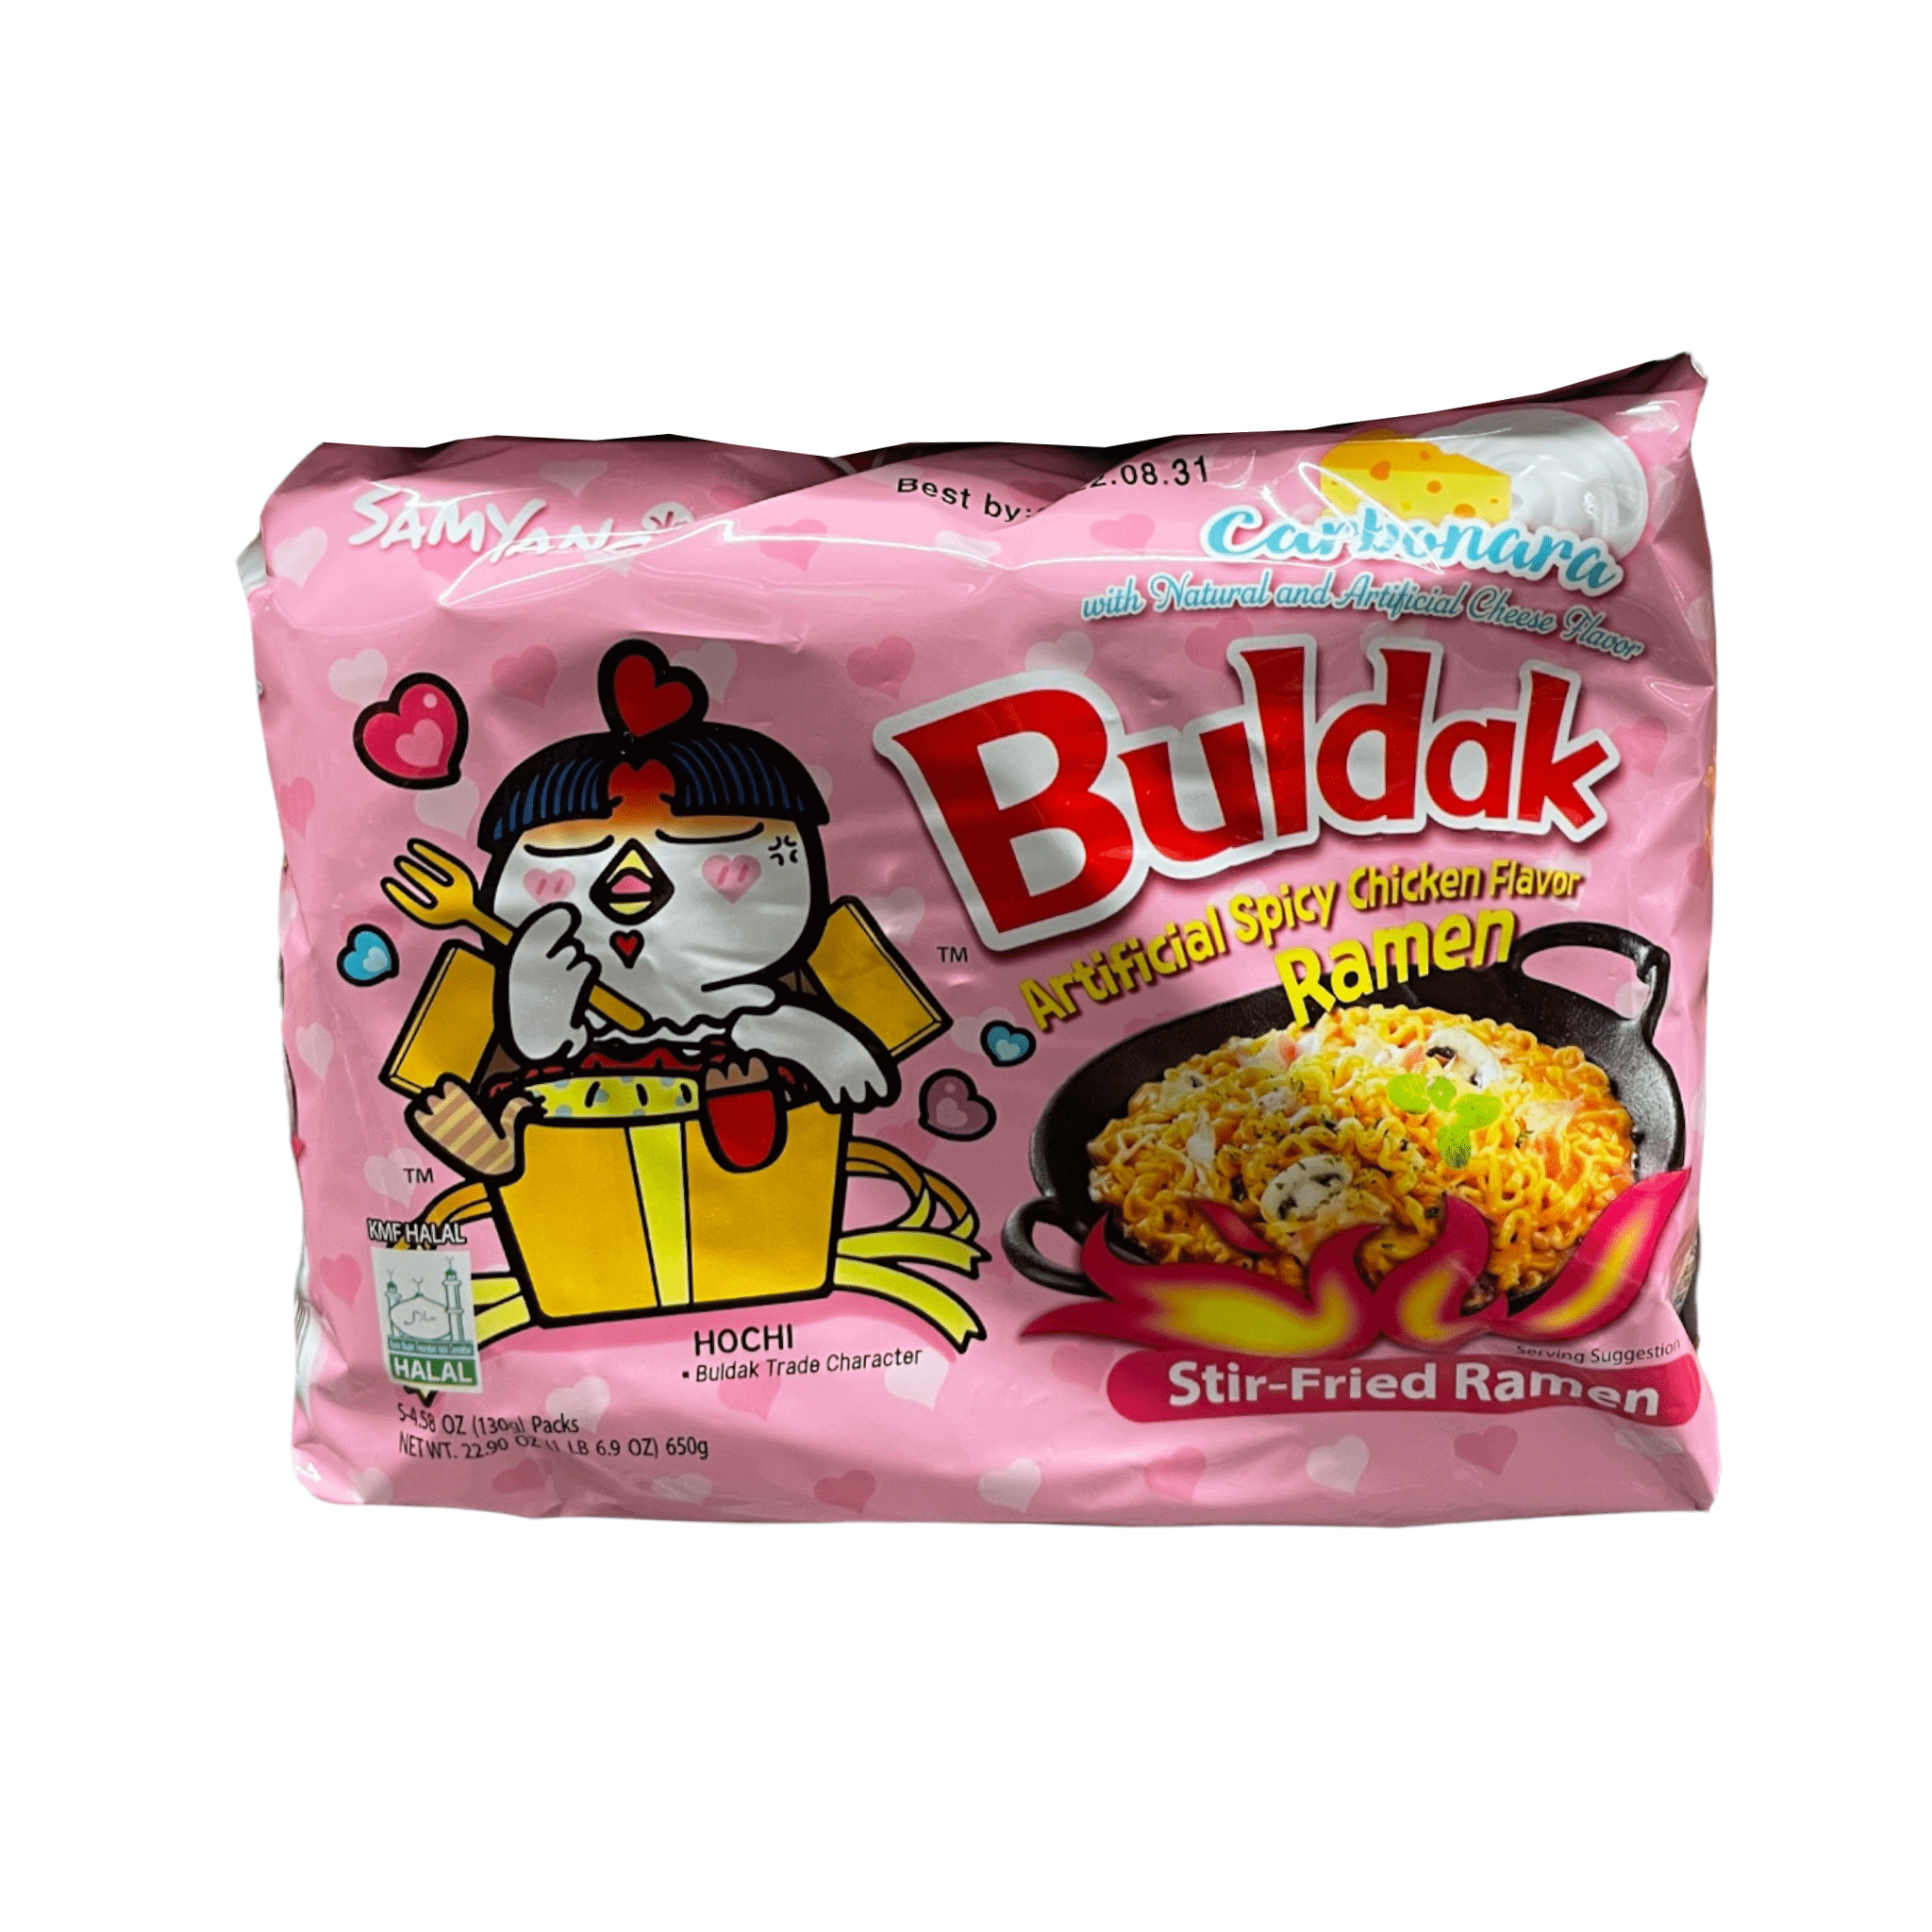 Buldak Spicy Chicken Ramen Snack